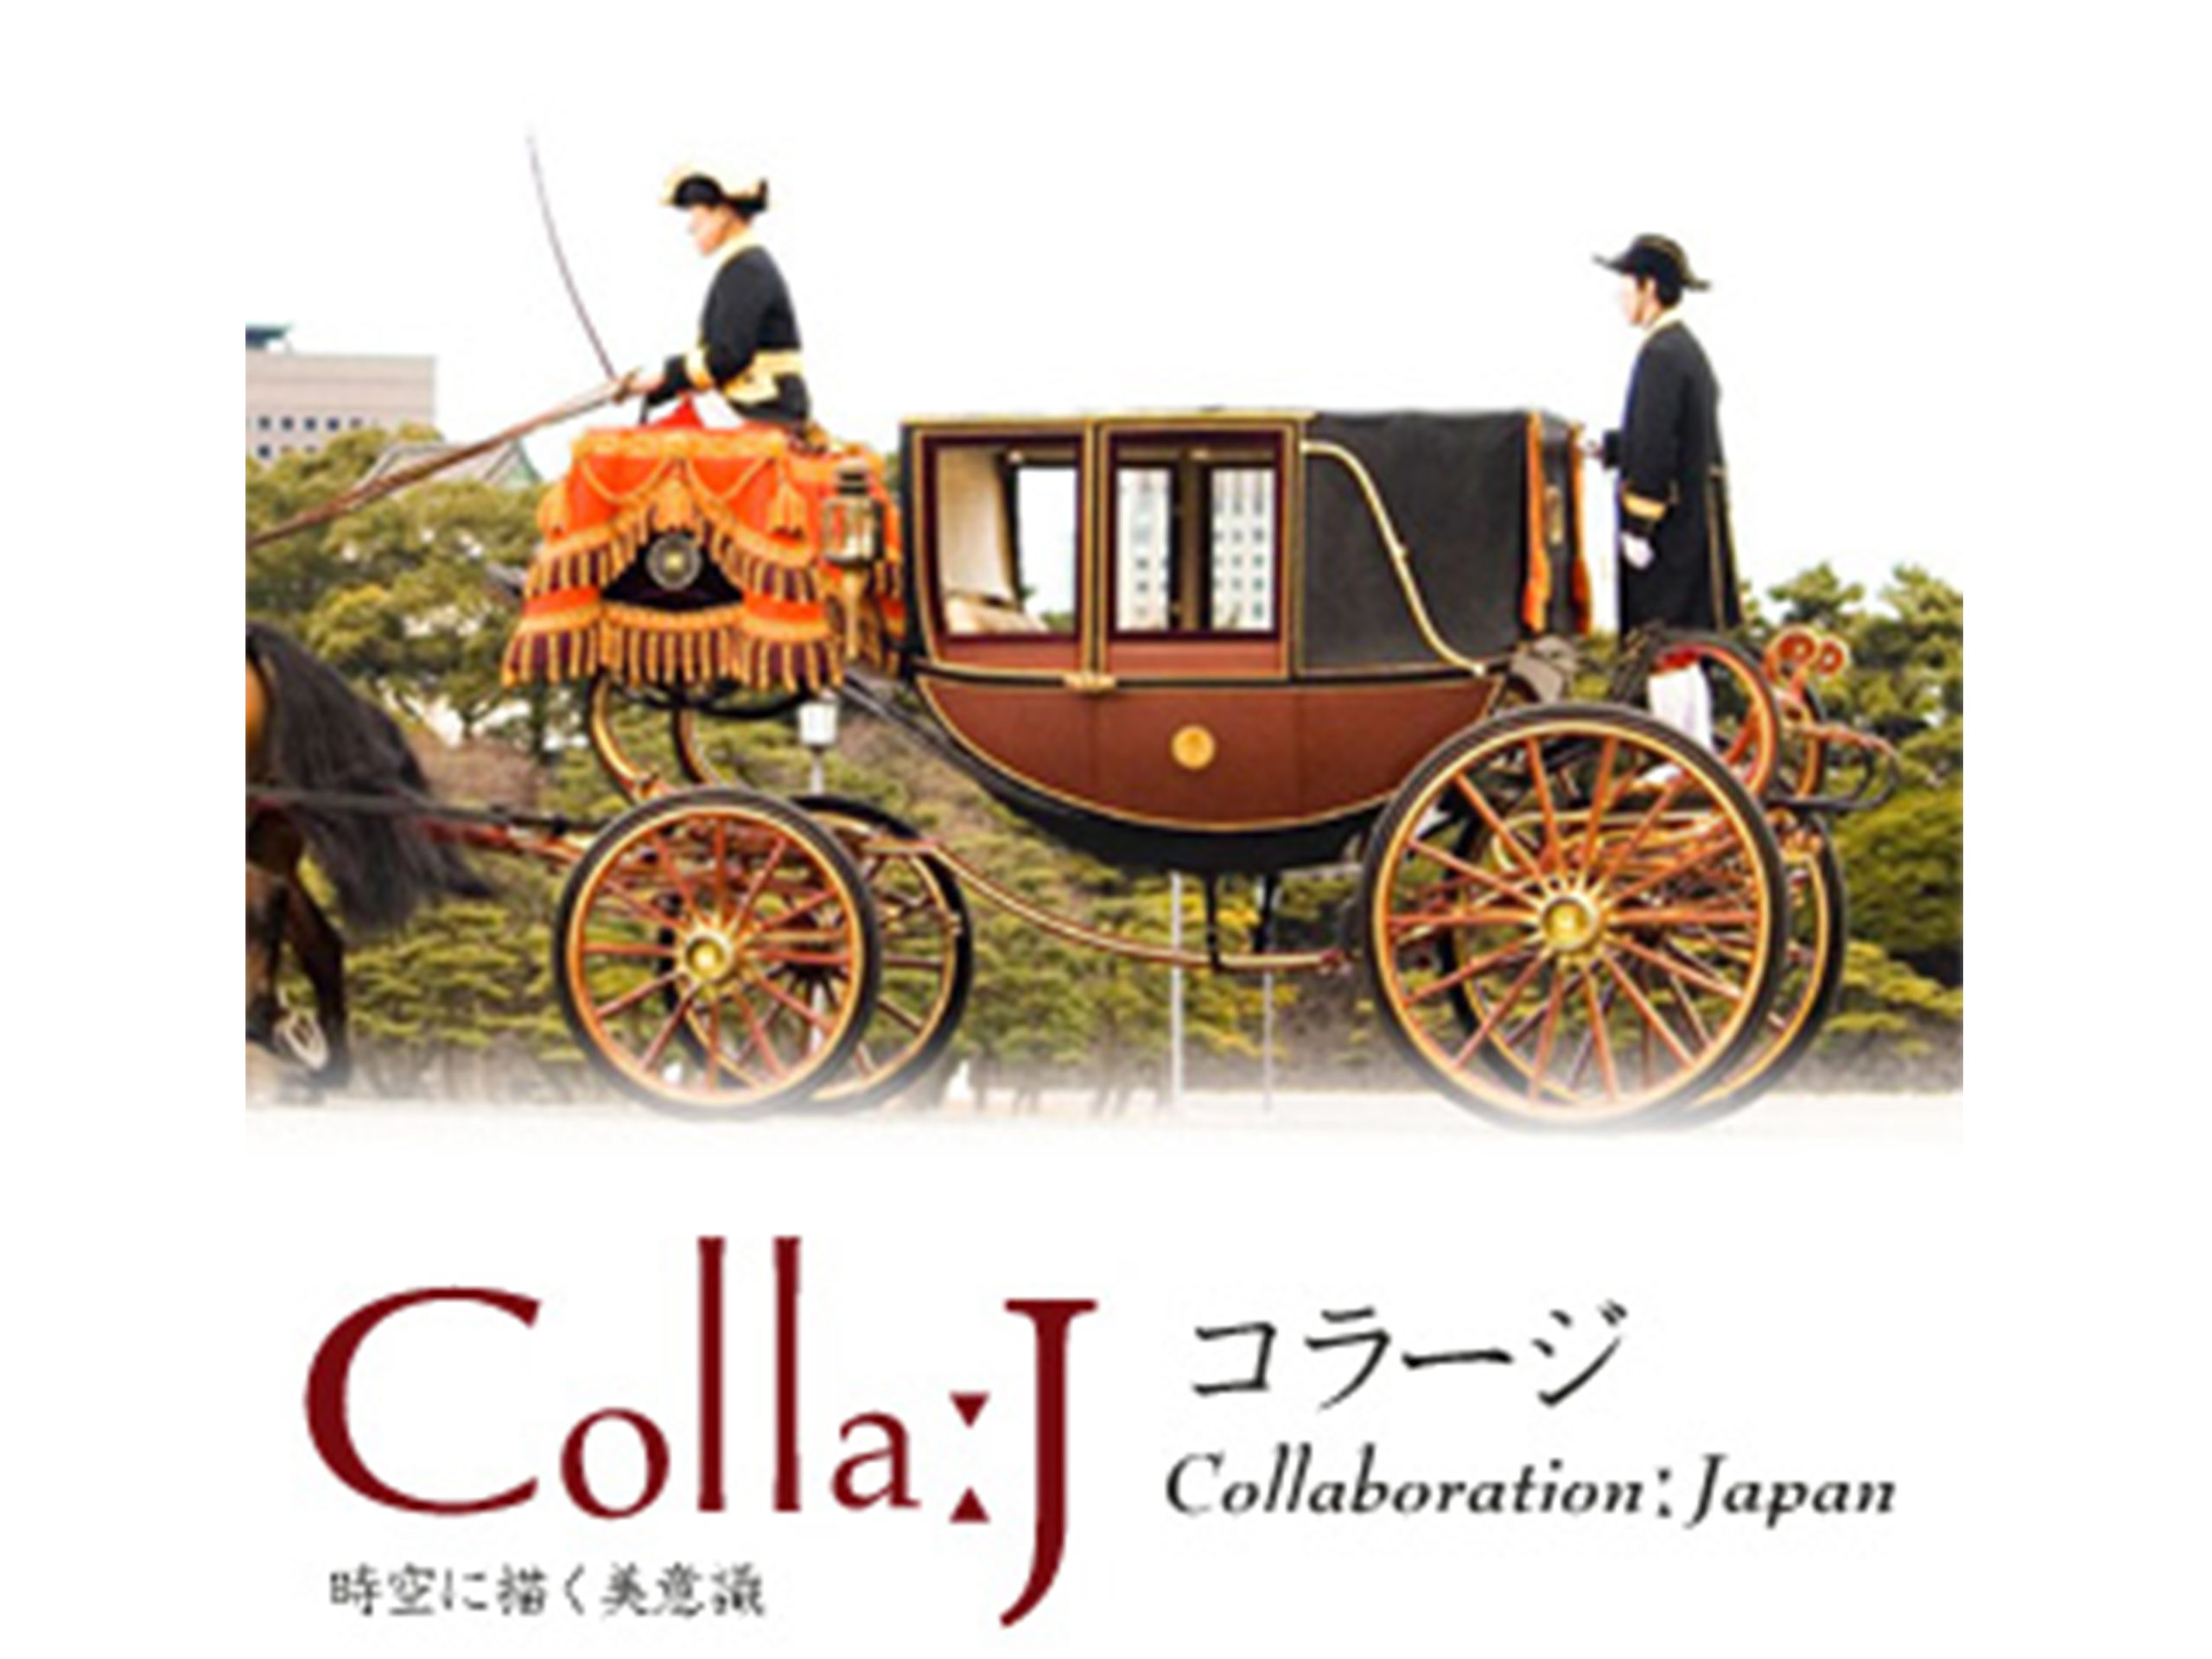  " alt="Colla:J 車輪夢ものがたり "